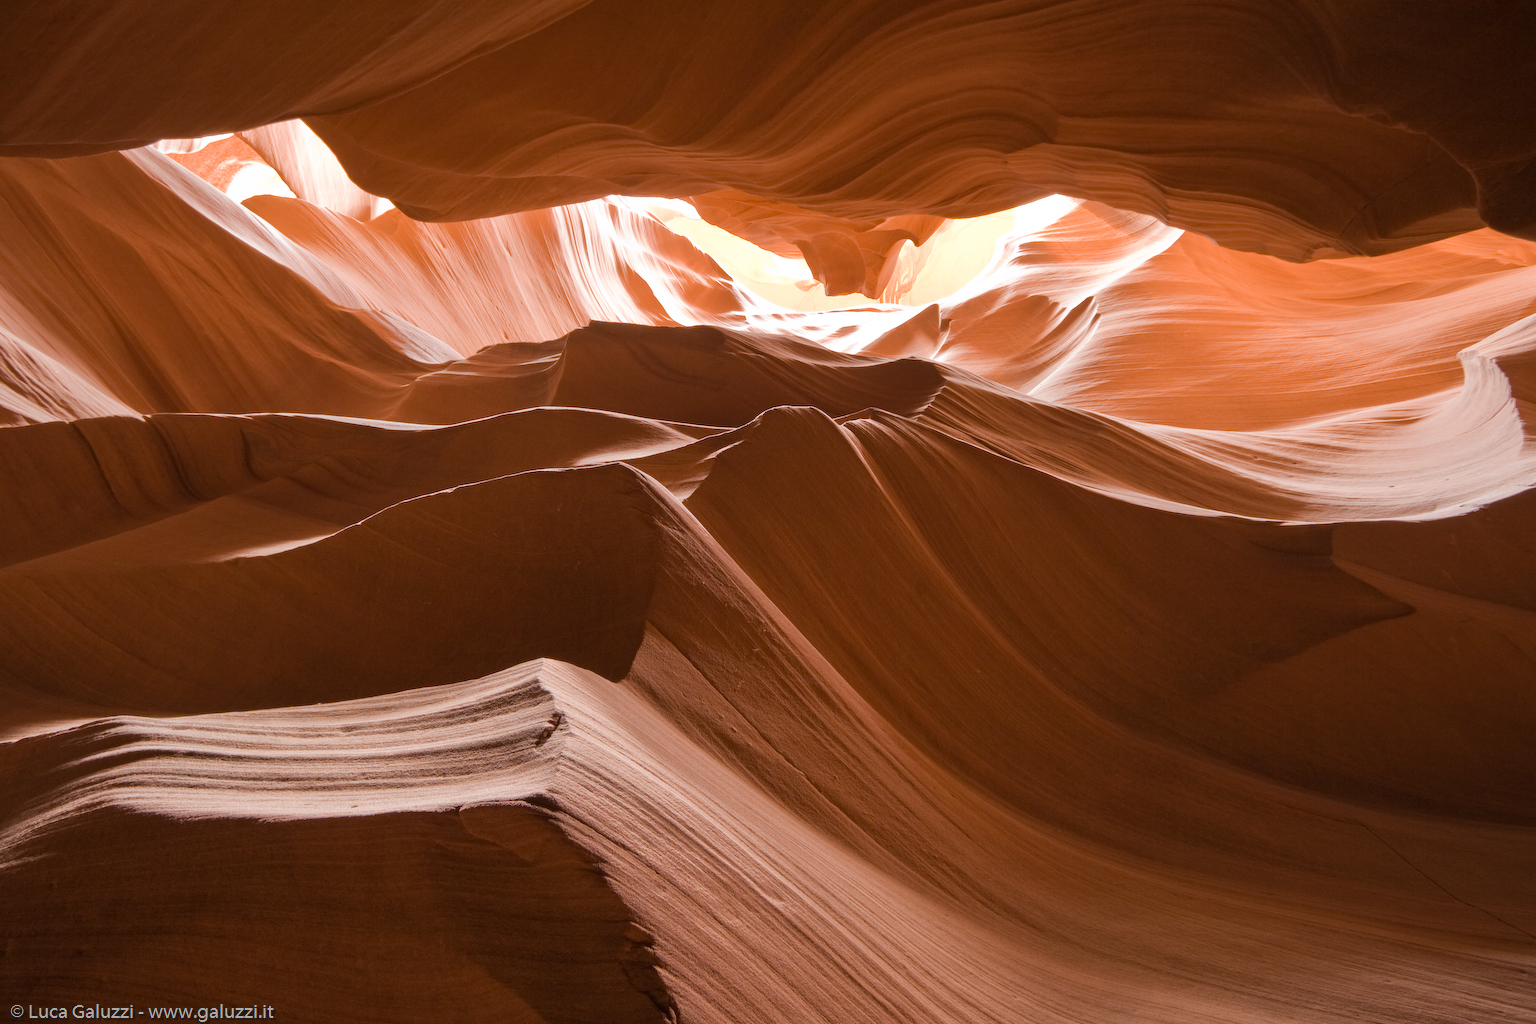 L'Antelope Canyon si è formato nel corso di milioni di anni a causa dell'erosione dell'arenaria da parte dell'acqua e del vento